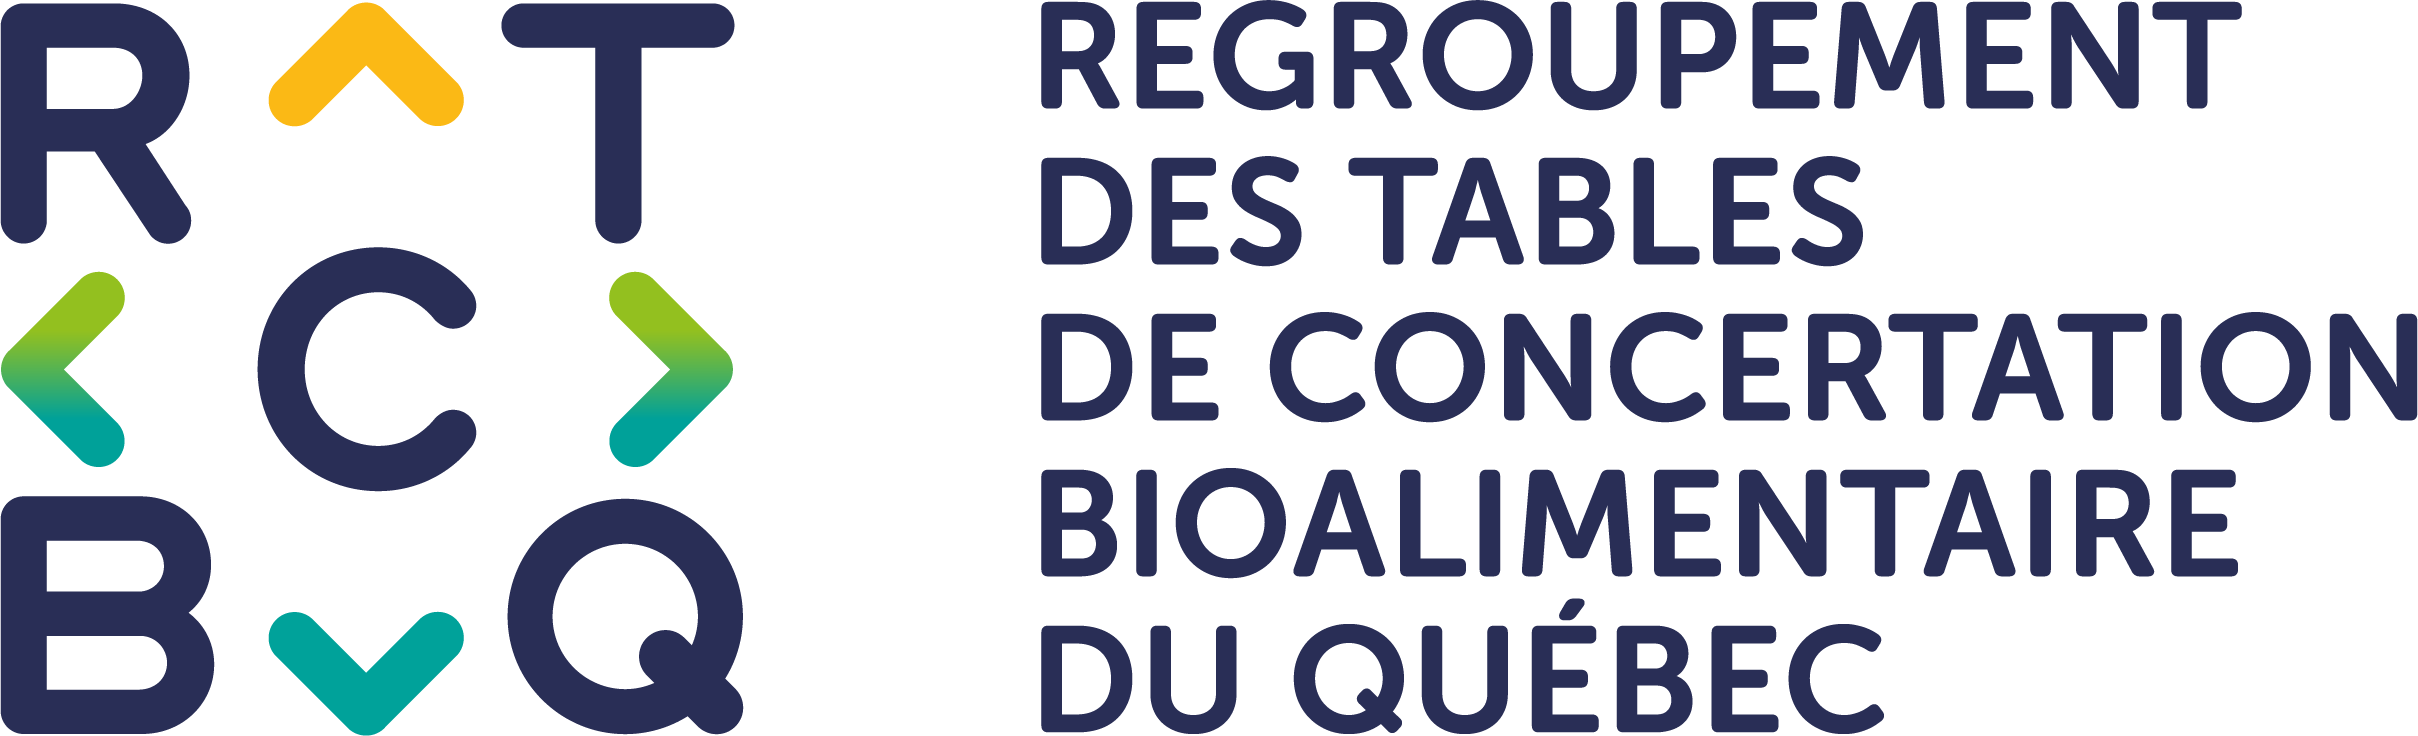 Regroupement des Tables de concertation bioalimentaire du Québec